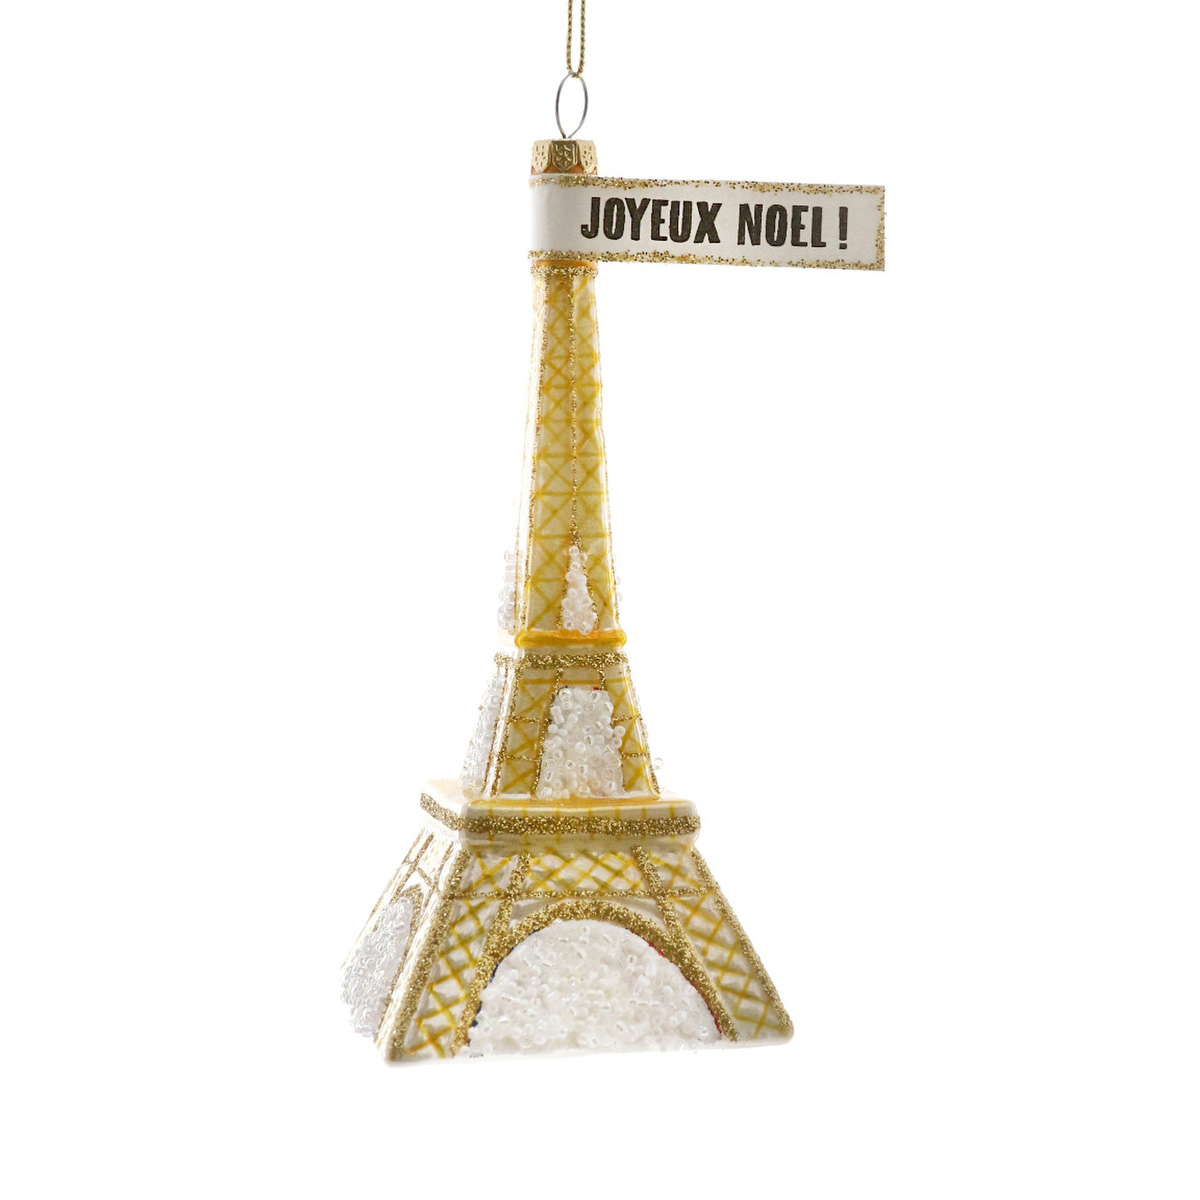 Weihnachtskugel Eiffelturm, Weihnachtsschmuck , ca. 14,5 cm ..s das kleine Schild "JOYEUX NOEL!" ist leider nicht lieferbar